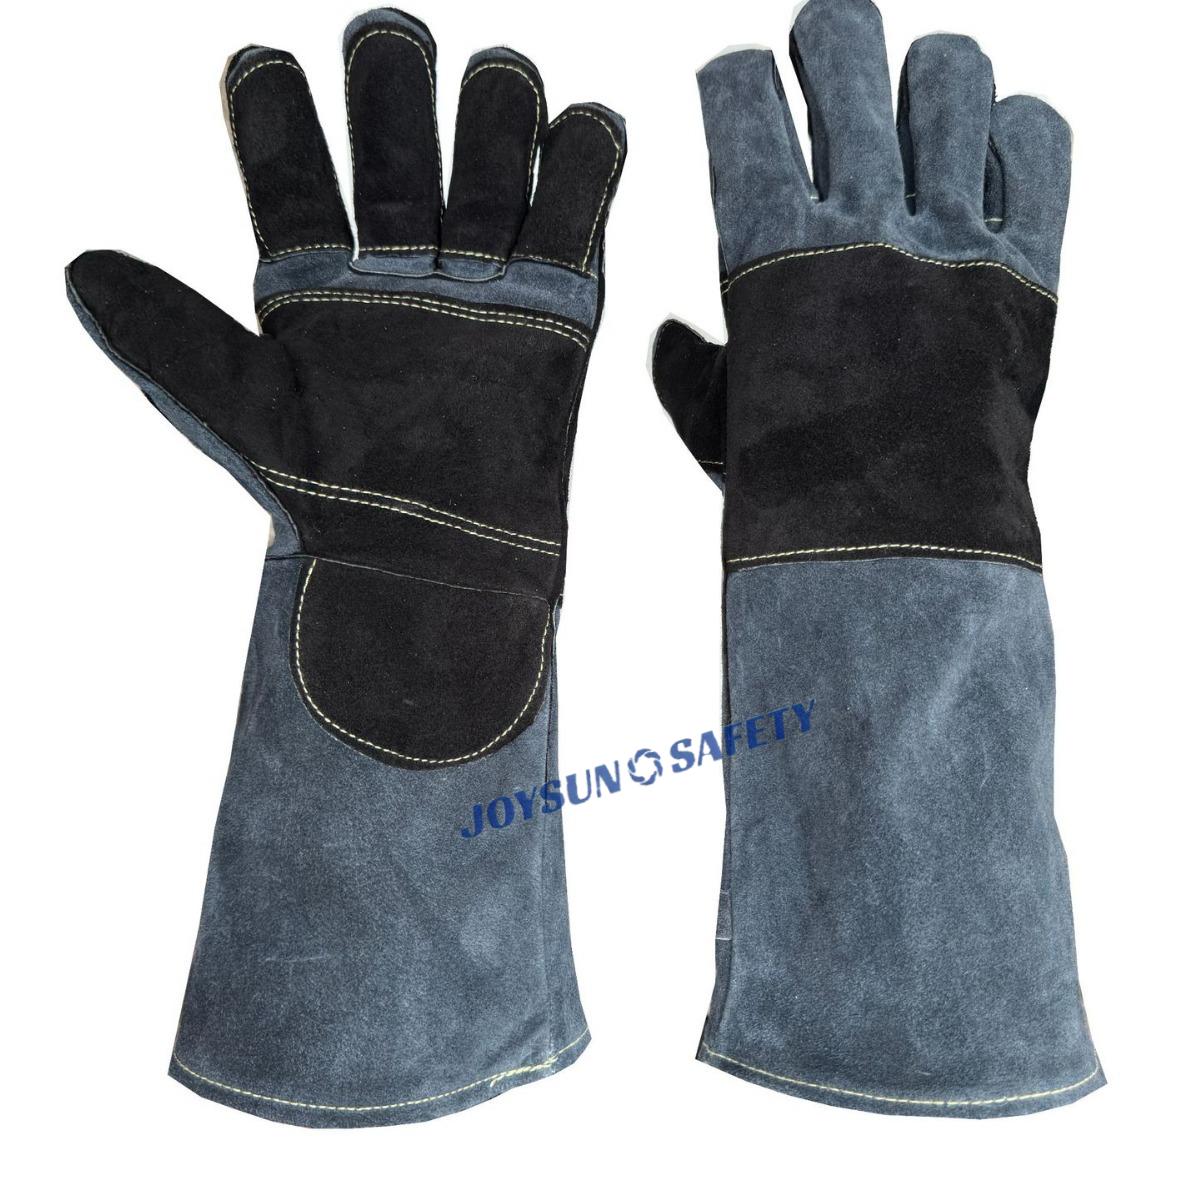 dark welding gloves